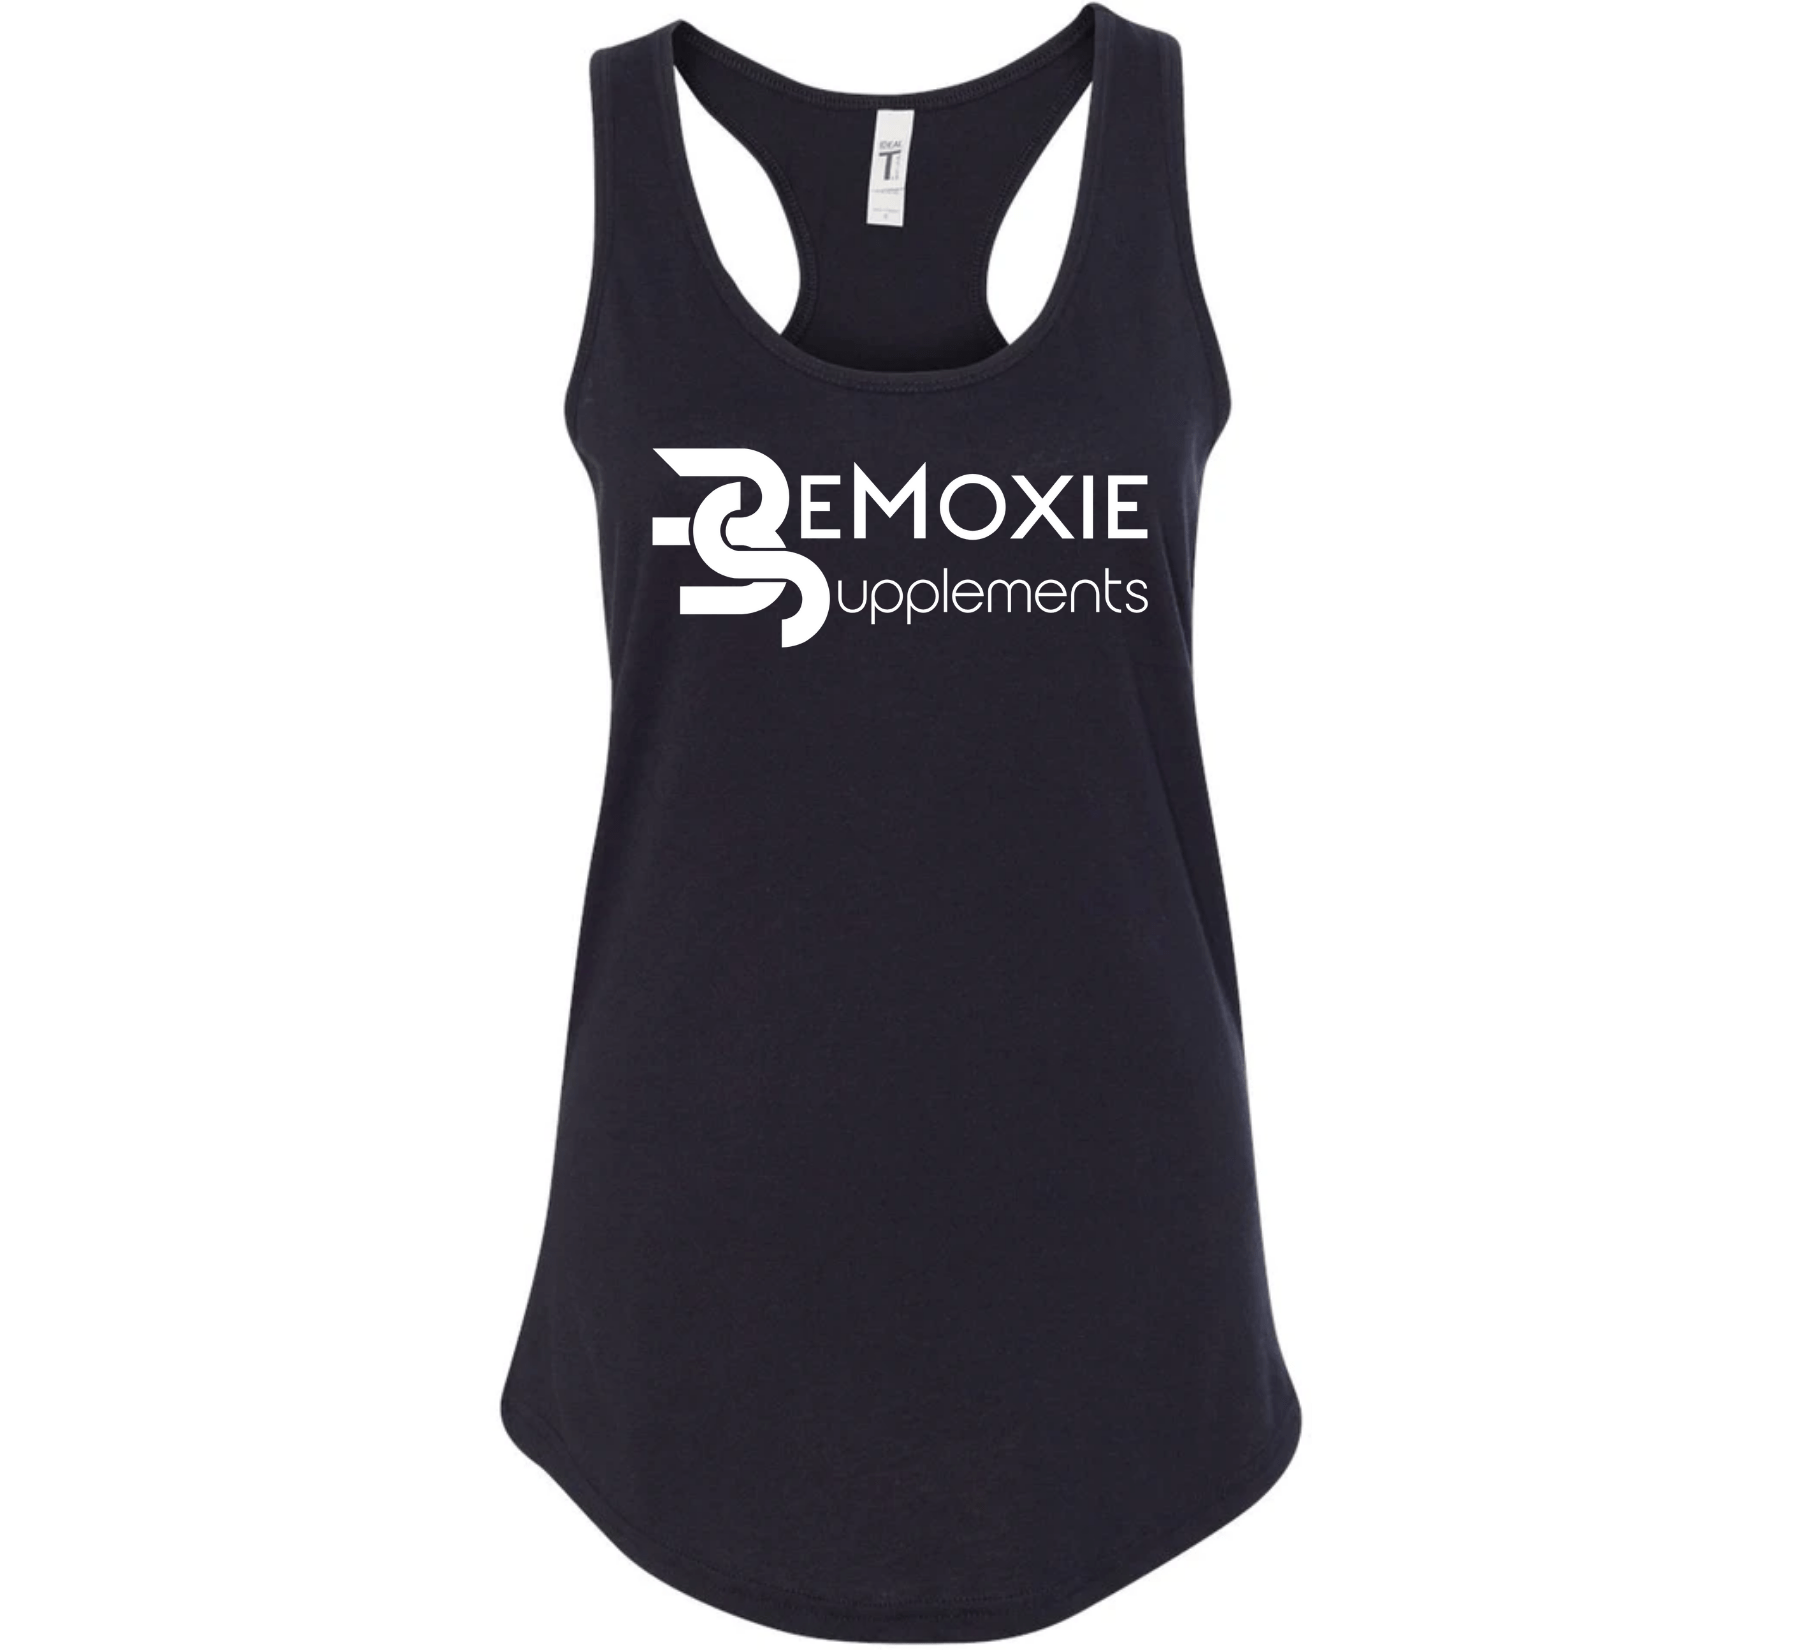 Womens OG Tanks - Bemoxie Supplements